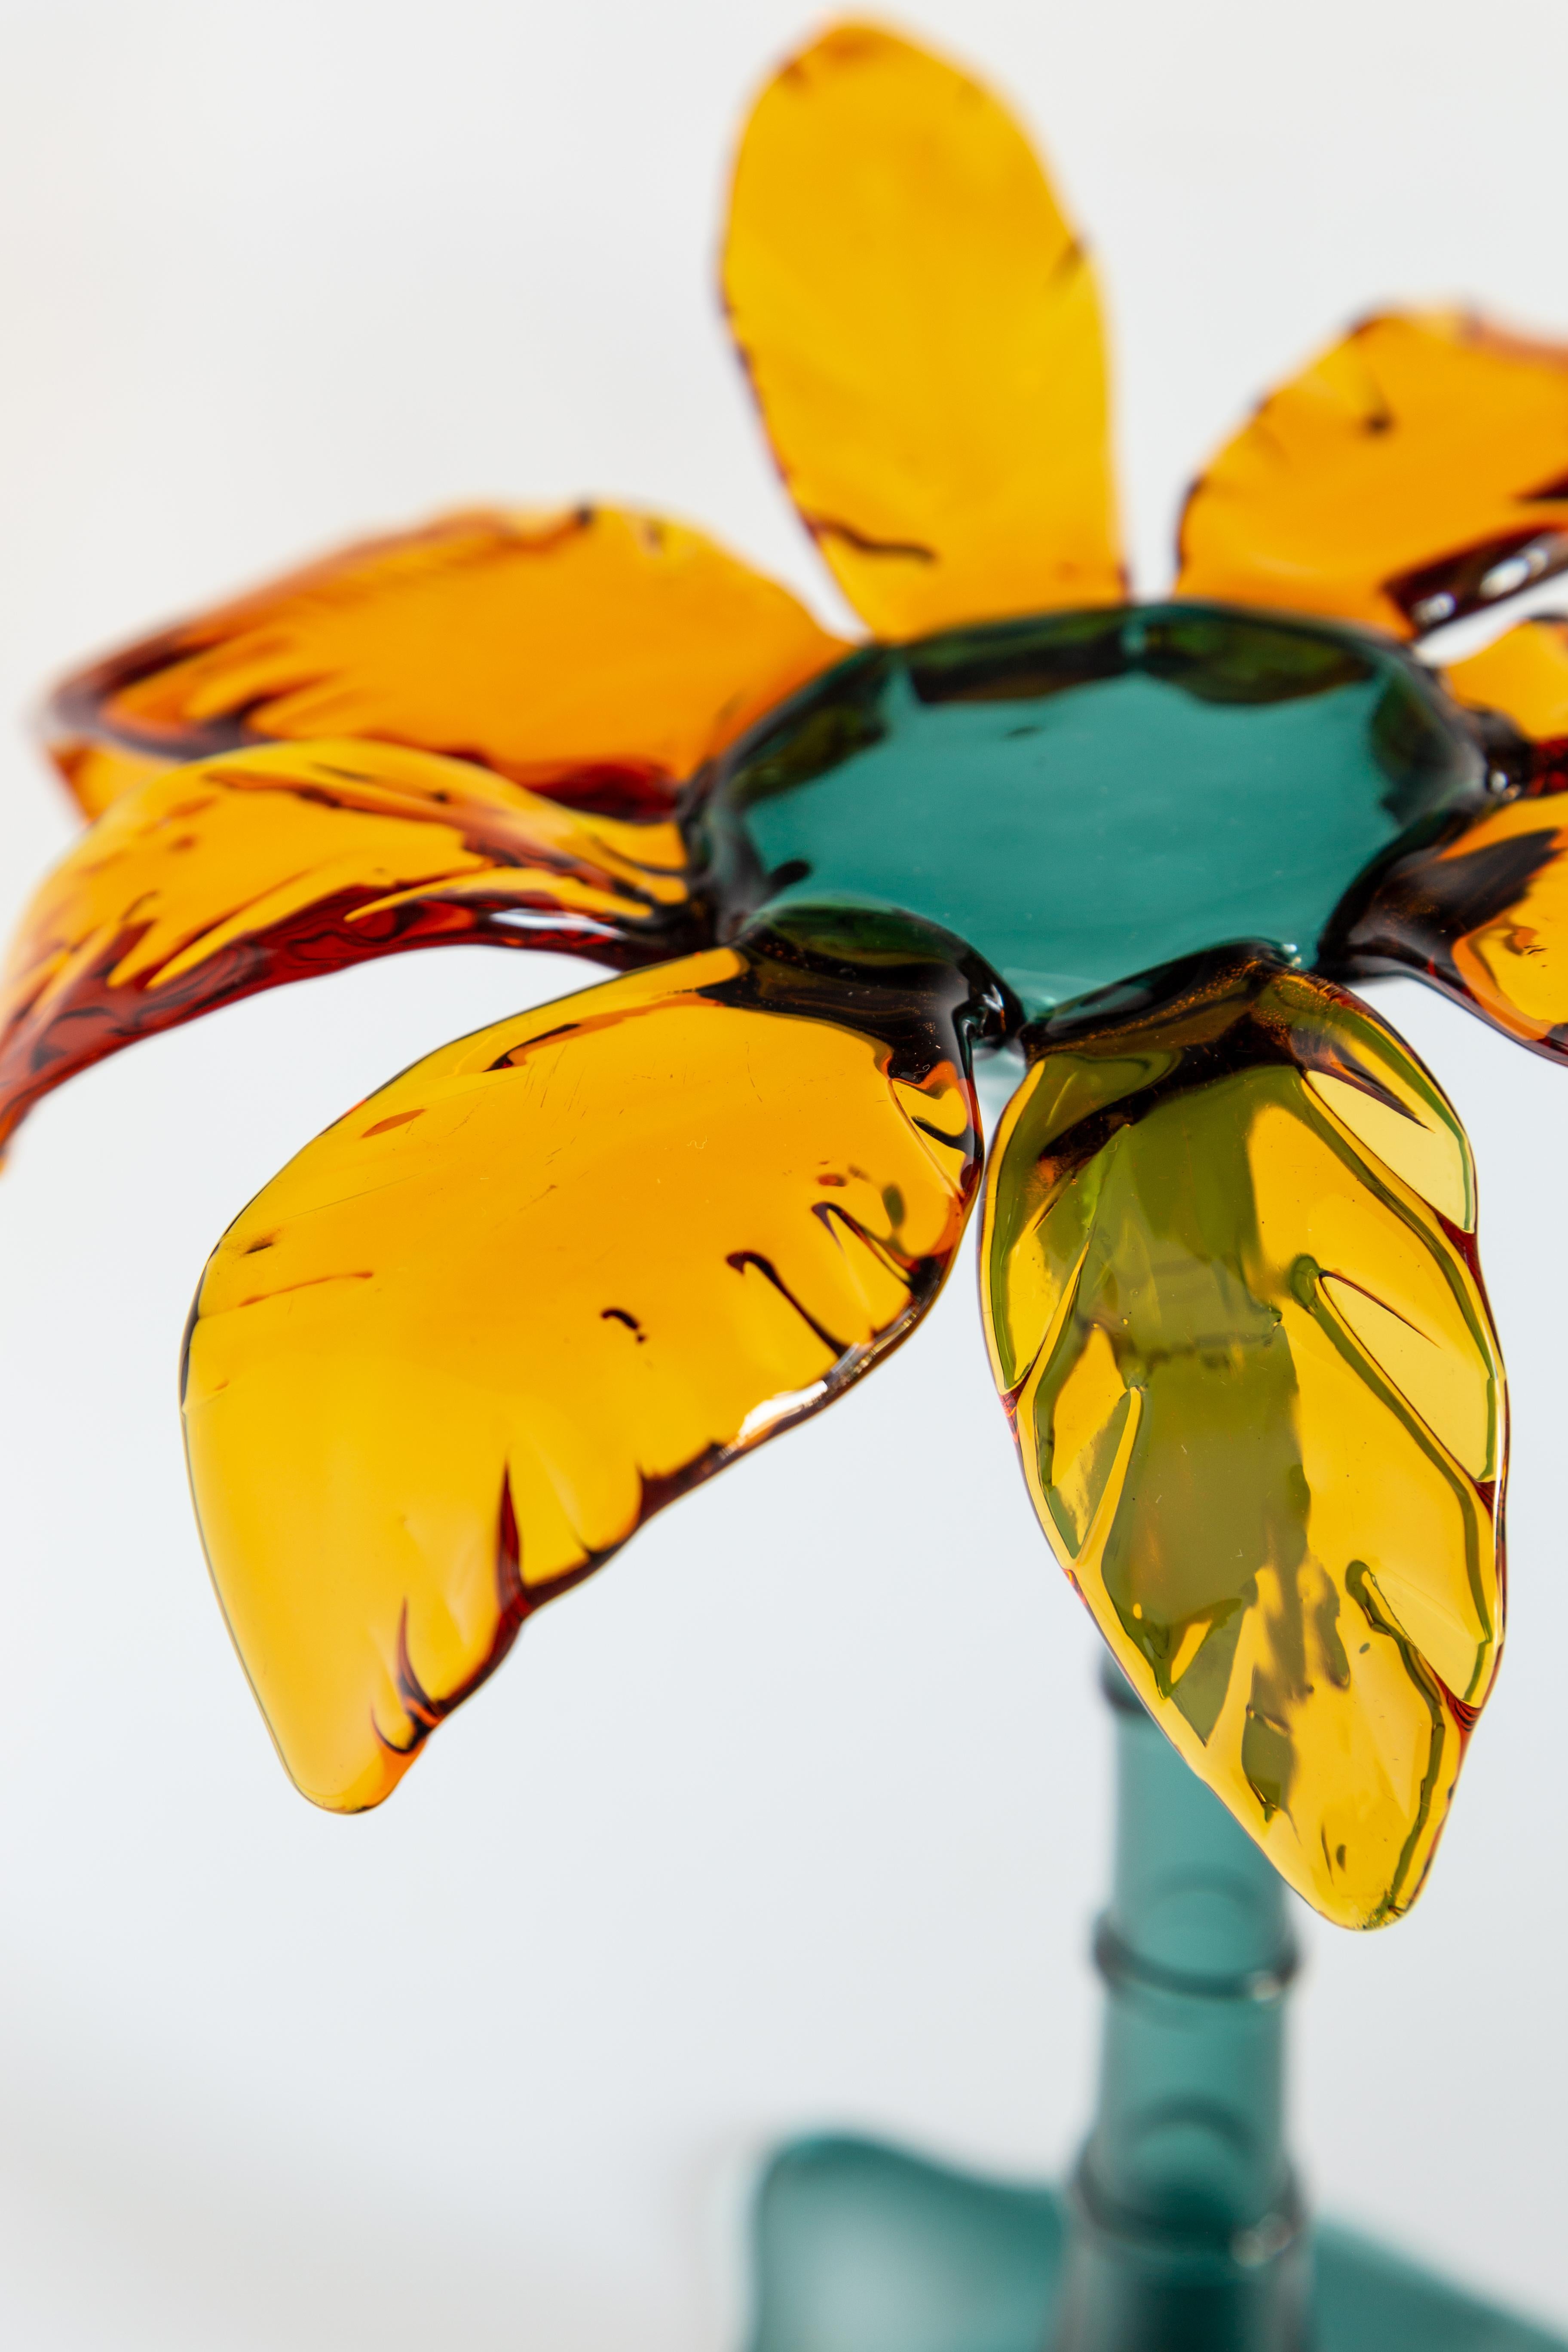 Made in Italy Gebäckständer aus geblasenem Glas in Palmenform.
Die kleine durchsichtige Handfläche hat oben eine ebene Fläche zur Aufnahme von Gebäck.
Grüne und gelbe Farbe. Entwurf von Vito Nesta.